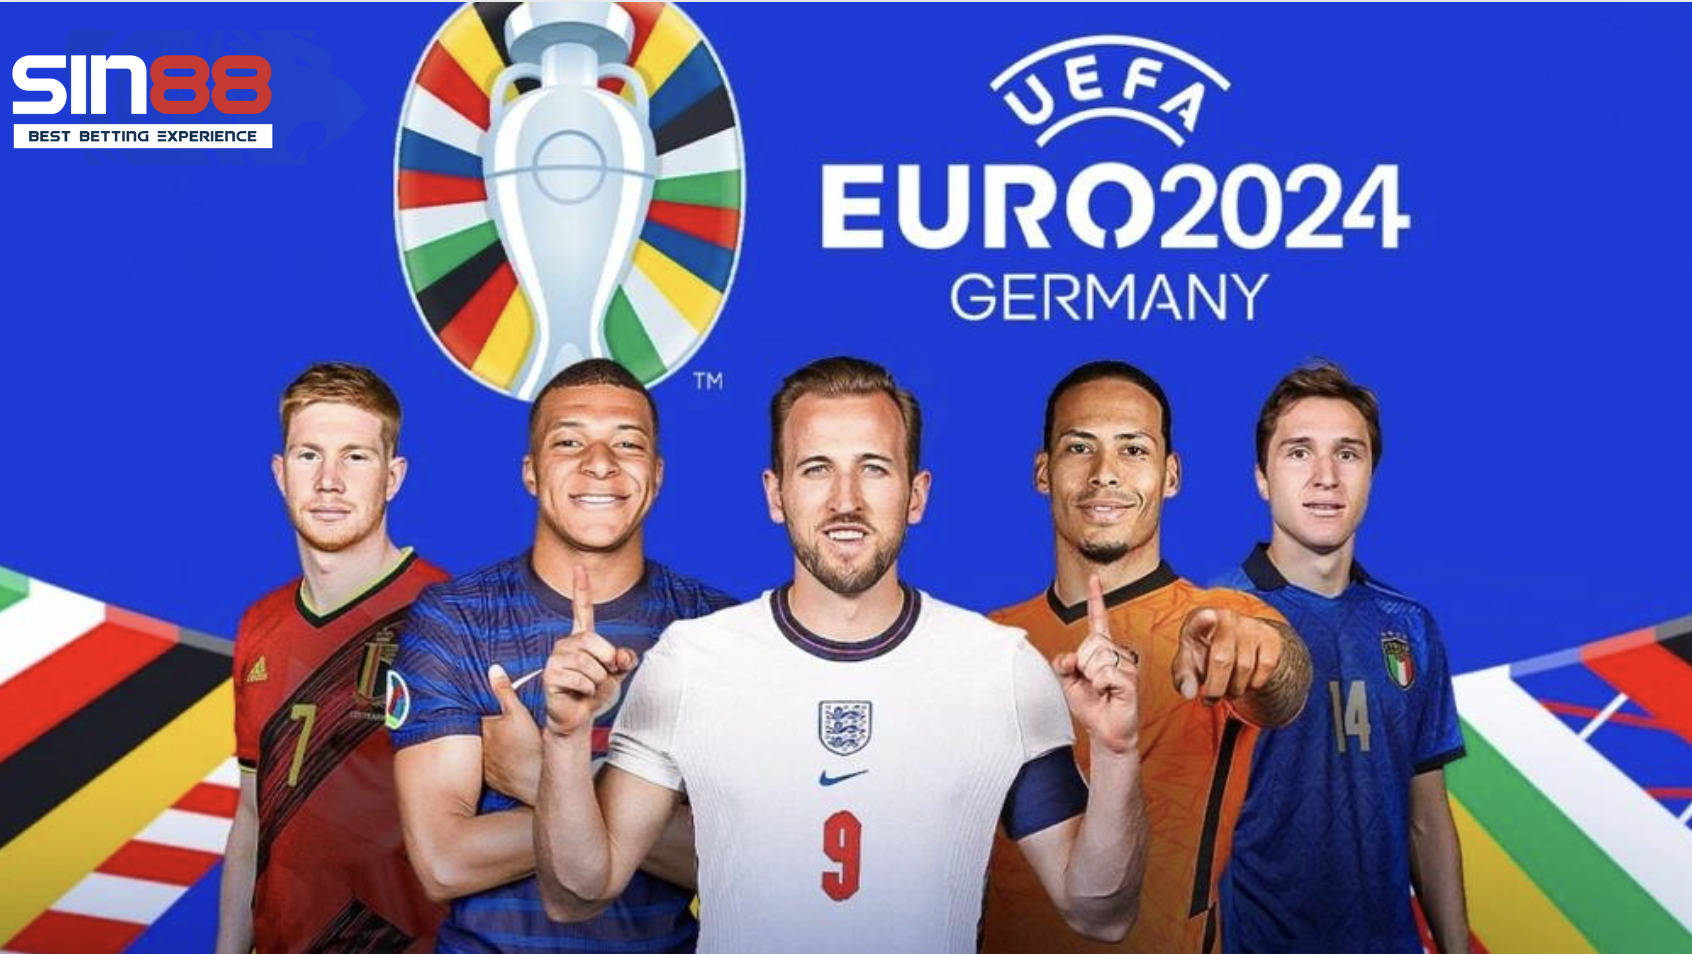 Giải bóng đá Euro 2024 diễn ra tại Đức